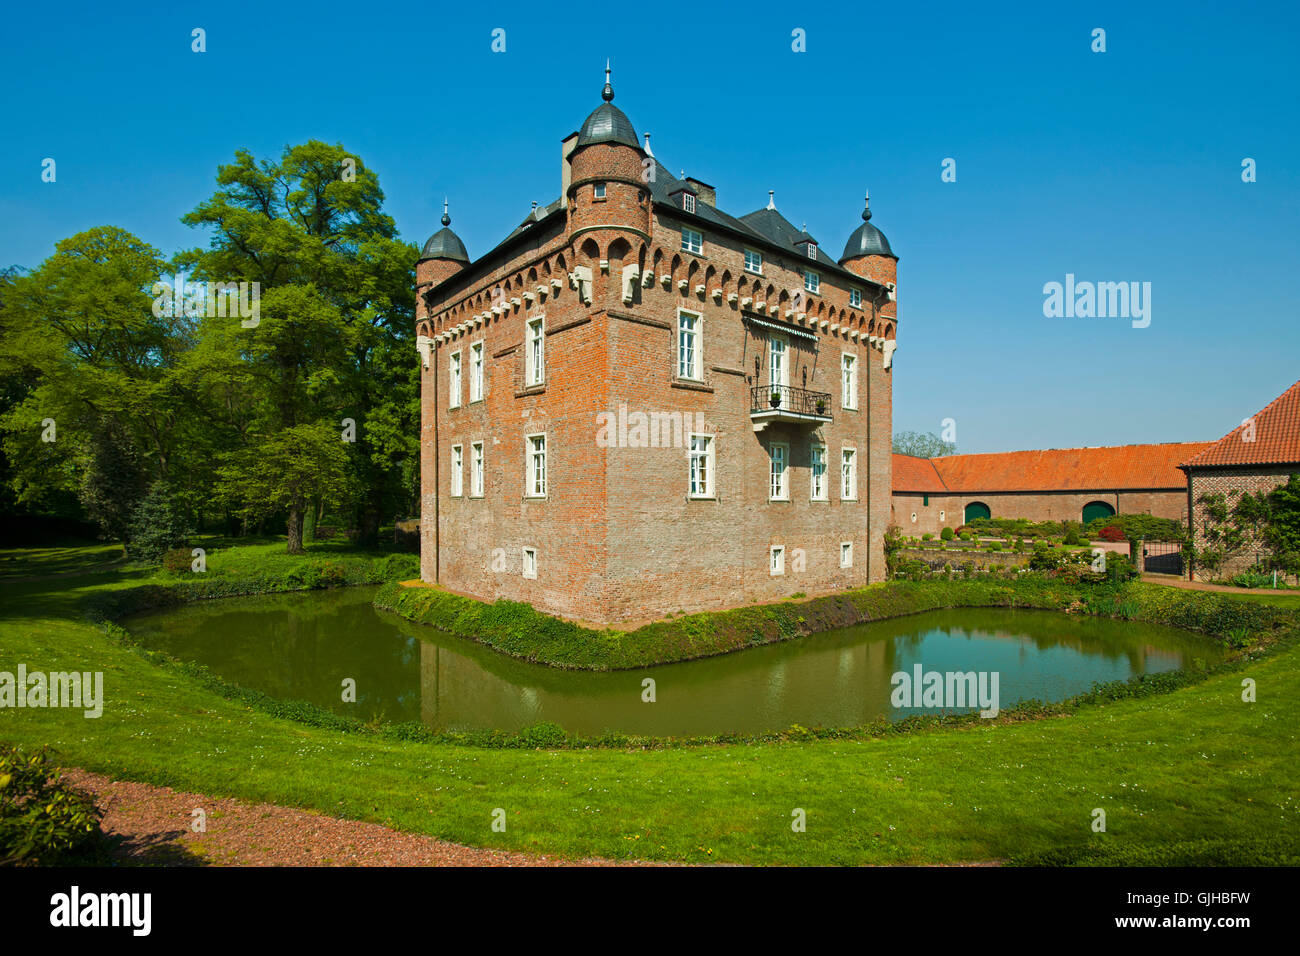 Deutschland, Nordrhein-Westfalen, Kreis Bergheim, Kerpen,  Schloss Loersfeld. Das Schloss wurde im 15. Jahrhundert erbaut, und i Stock Photo